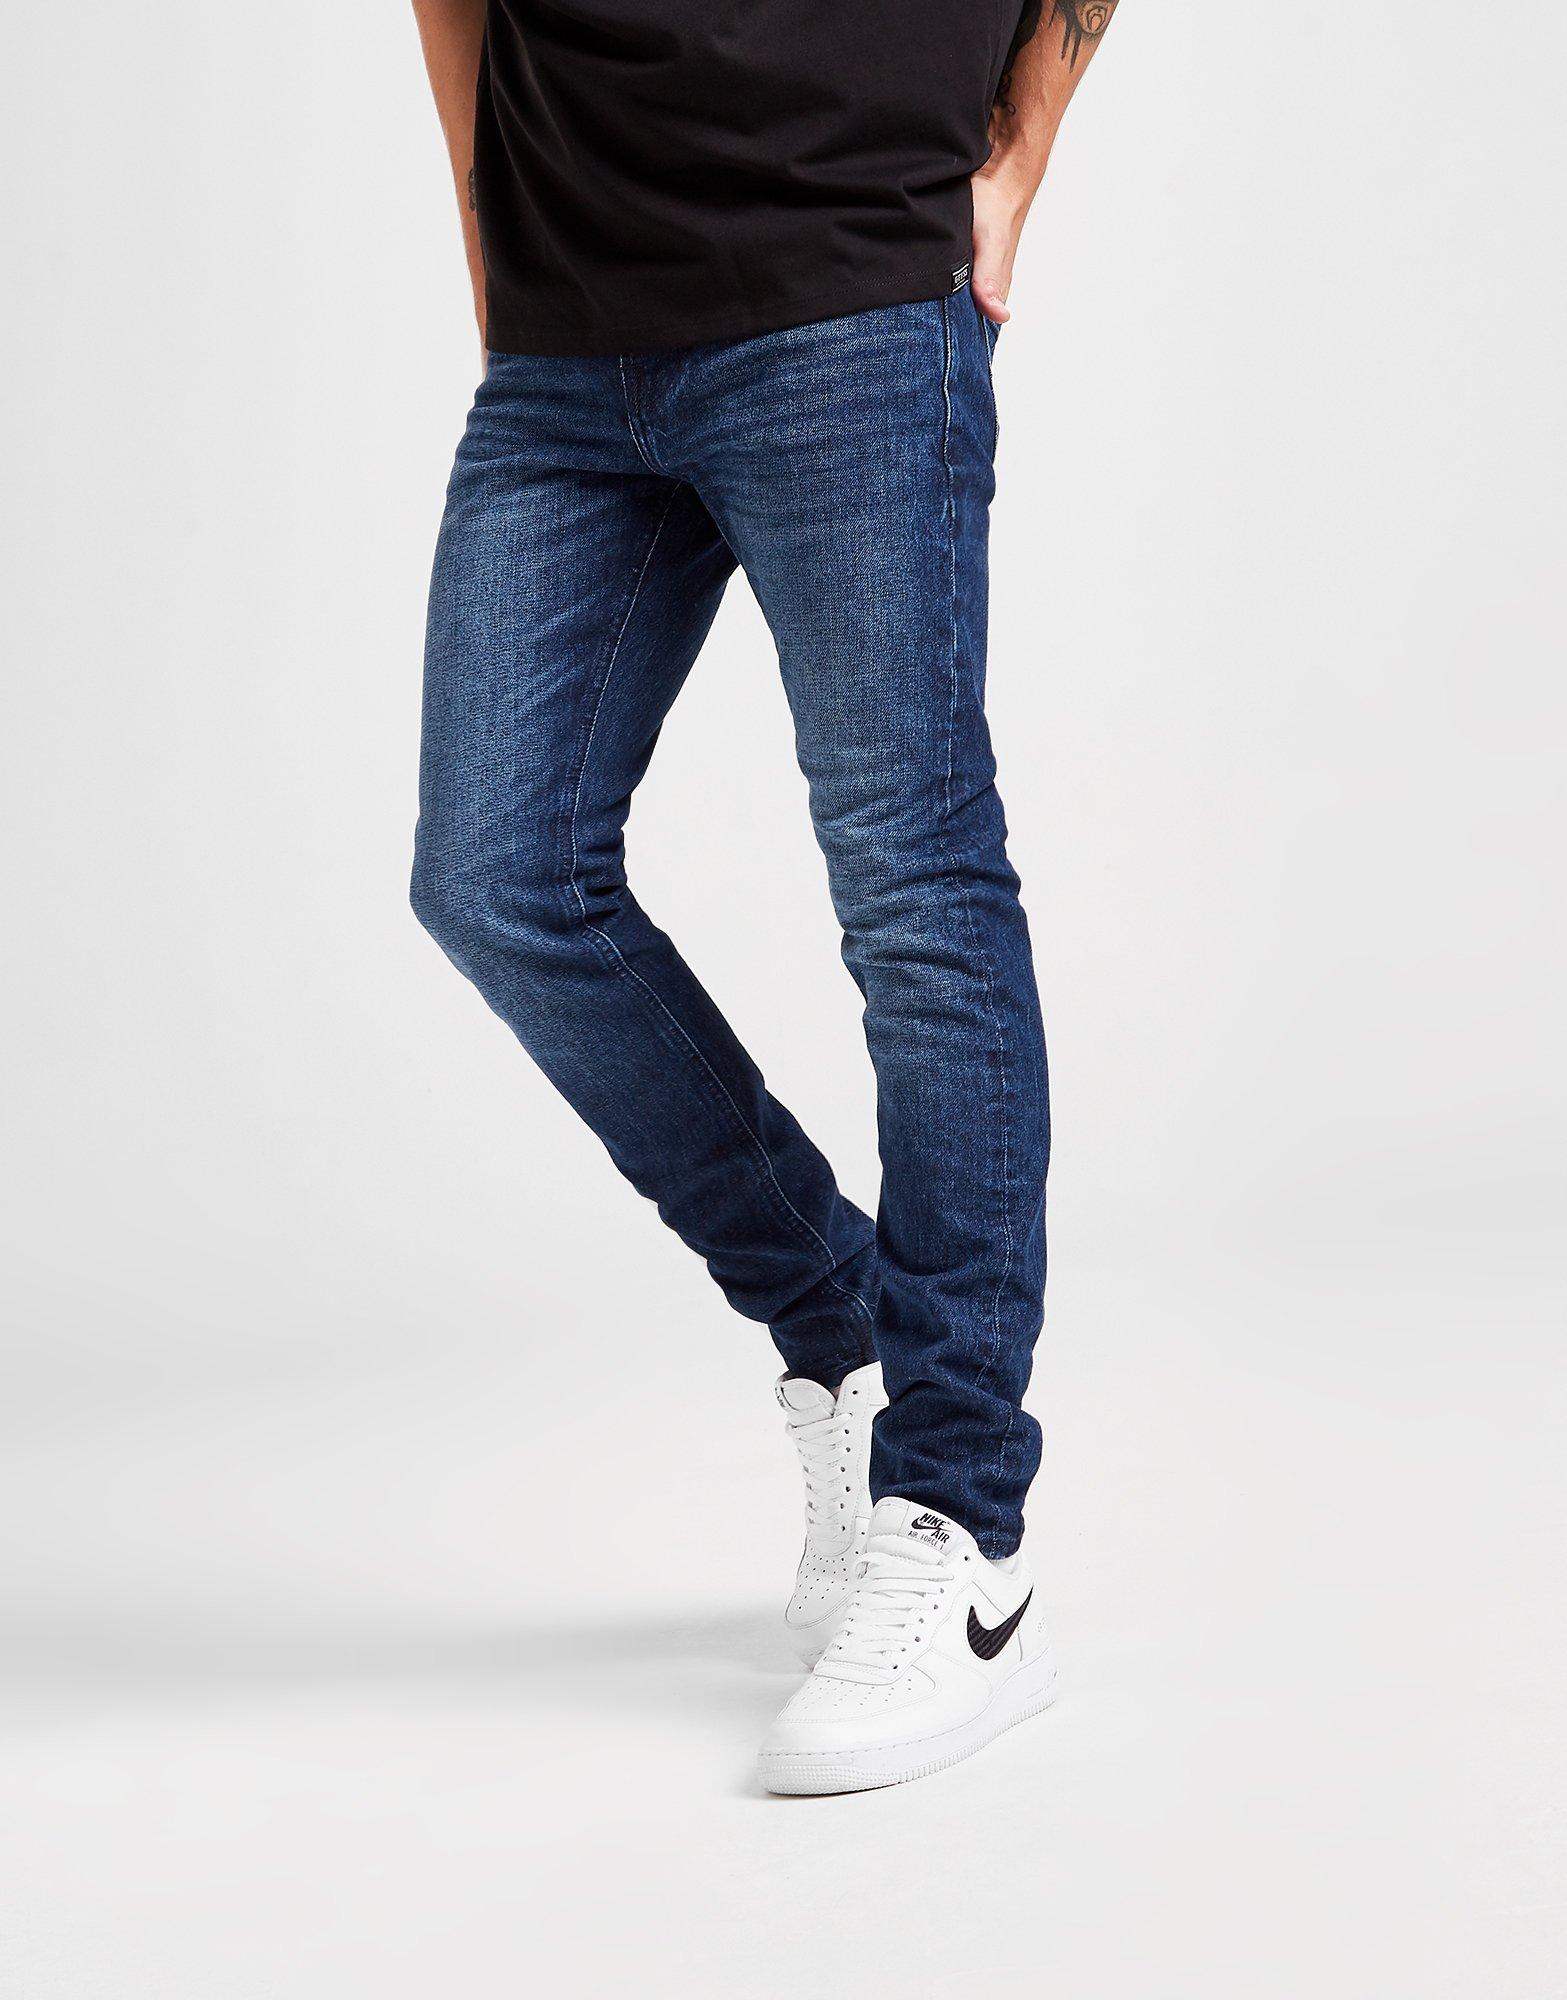 nike cortez with skinny jeans